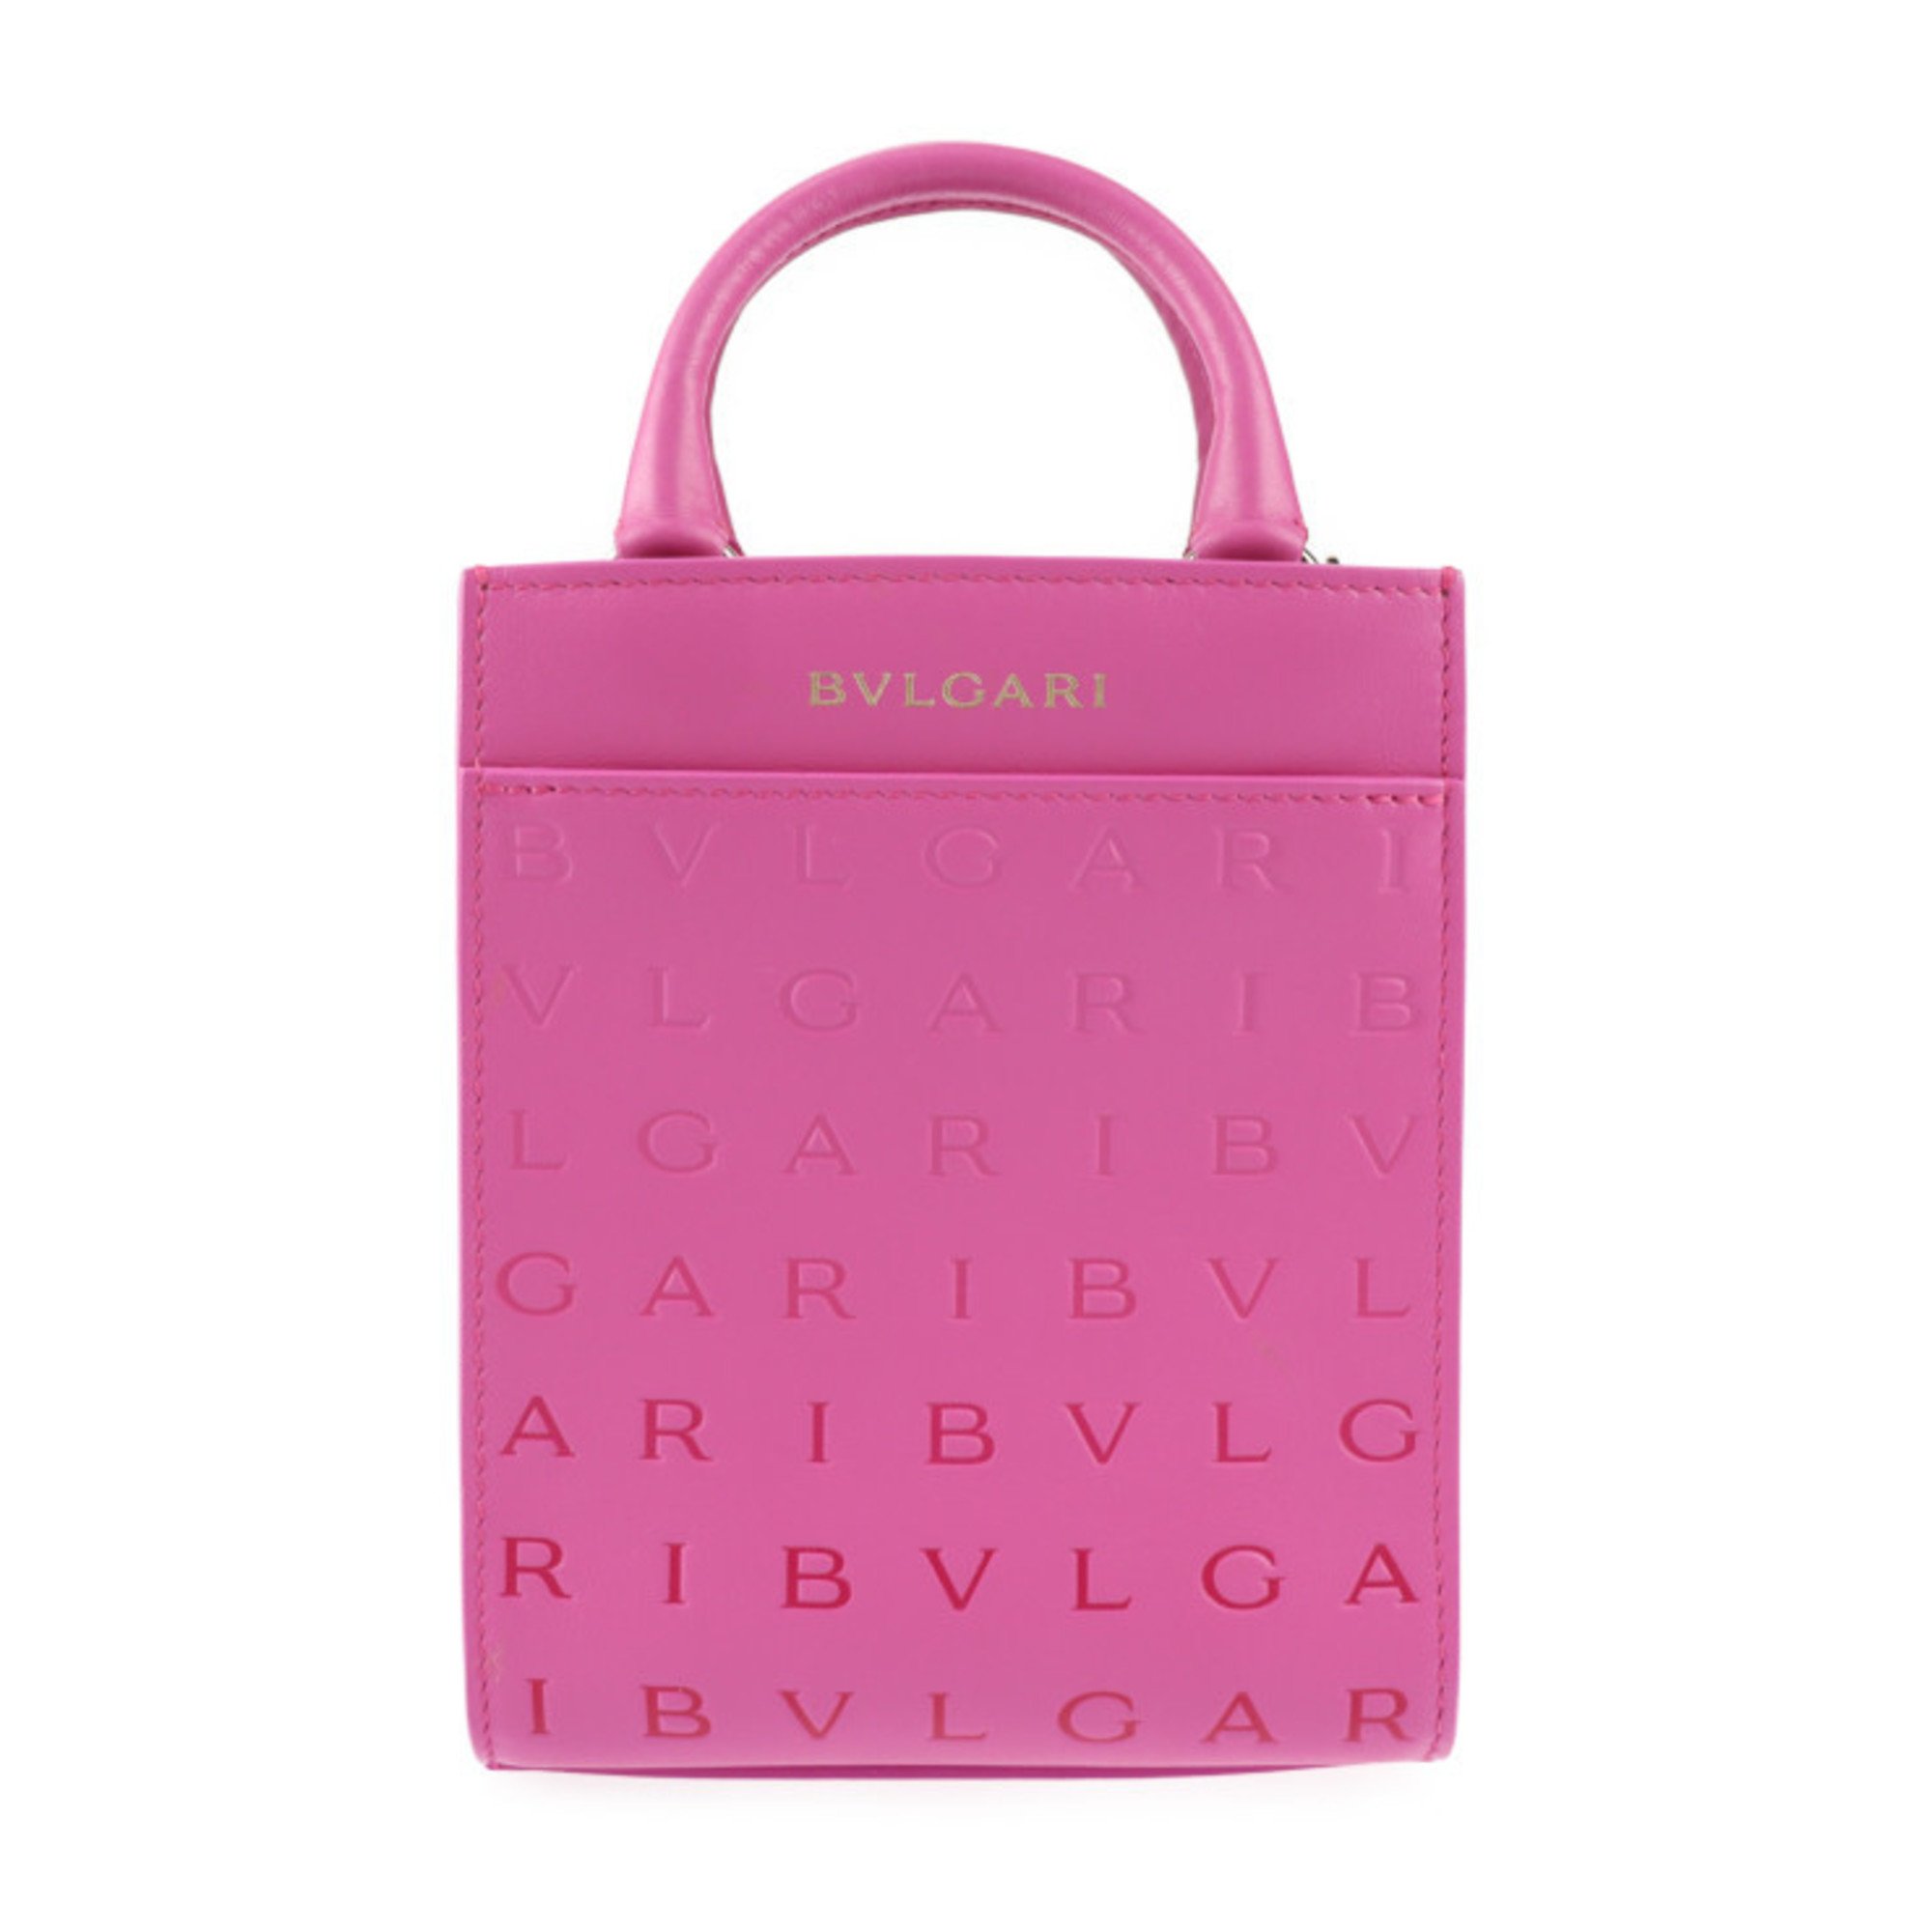 BVLGARI Bvlgari Tote Bag Infinitum Handbag 292318 Calf Leather Pink Shoulder